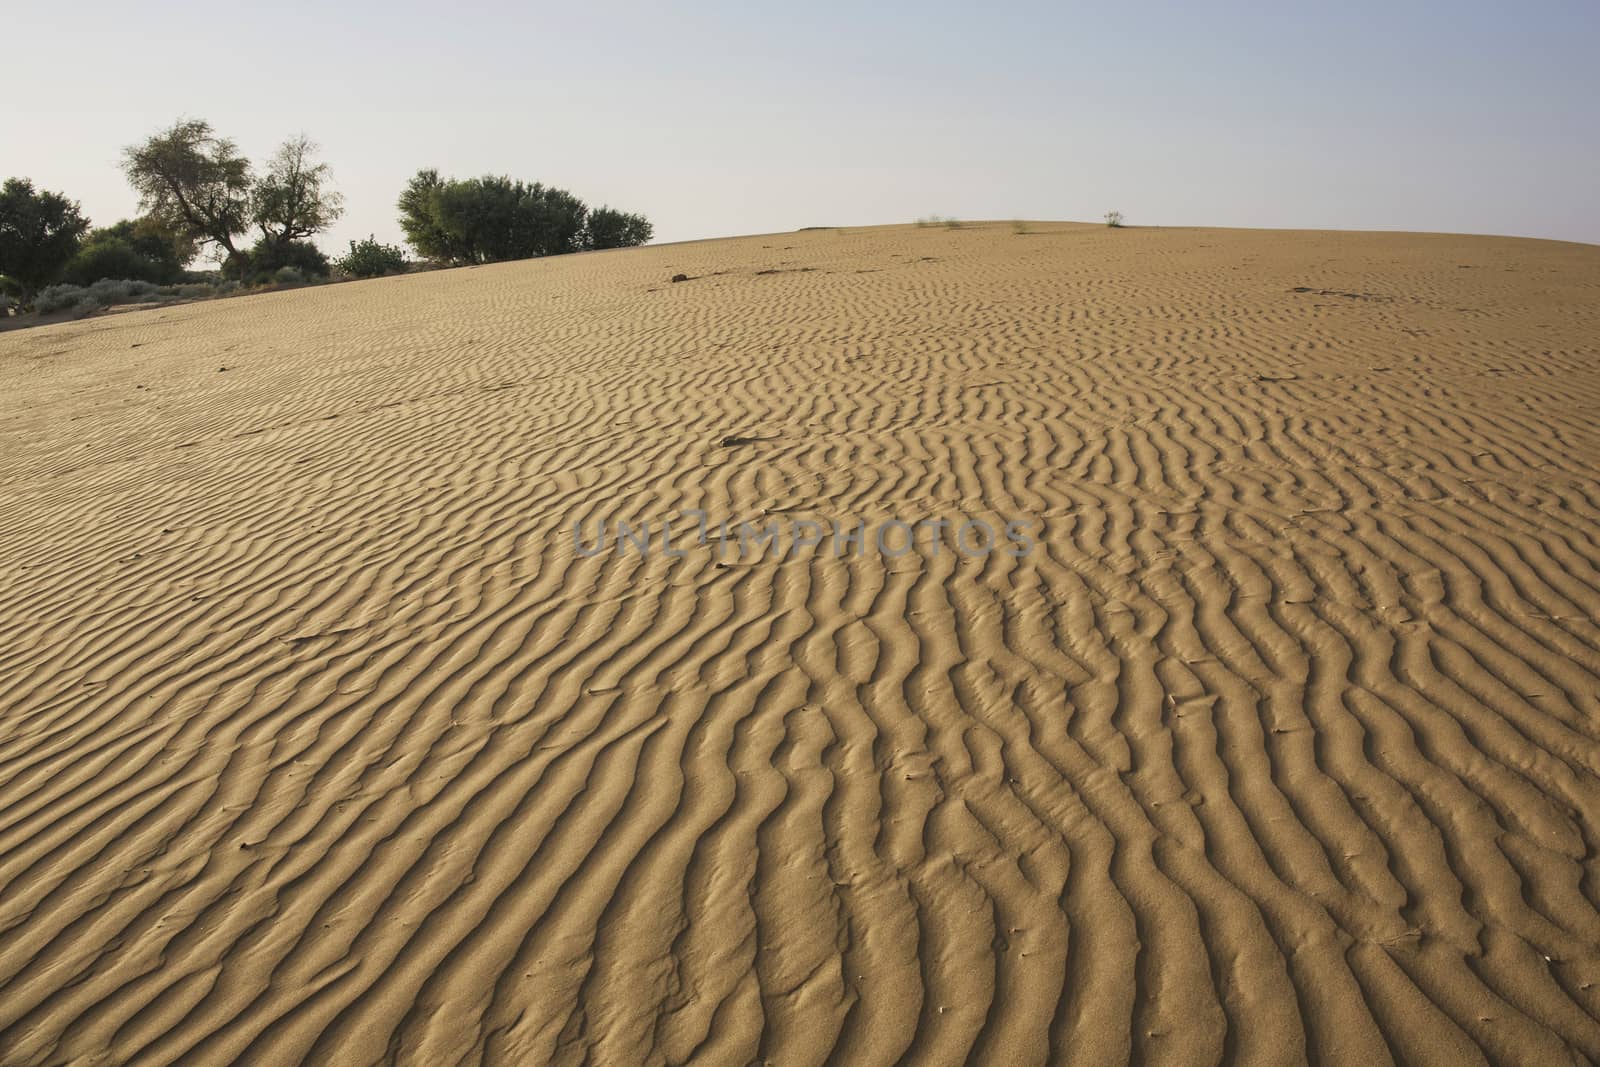 Thar Desert, Rajasthan India by Tjeerdkruse